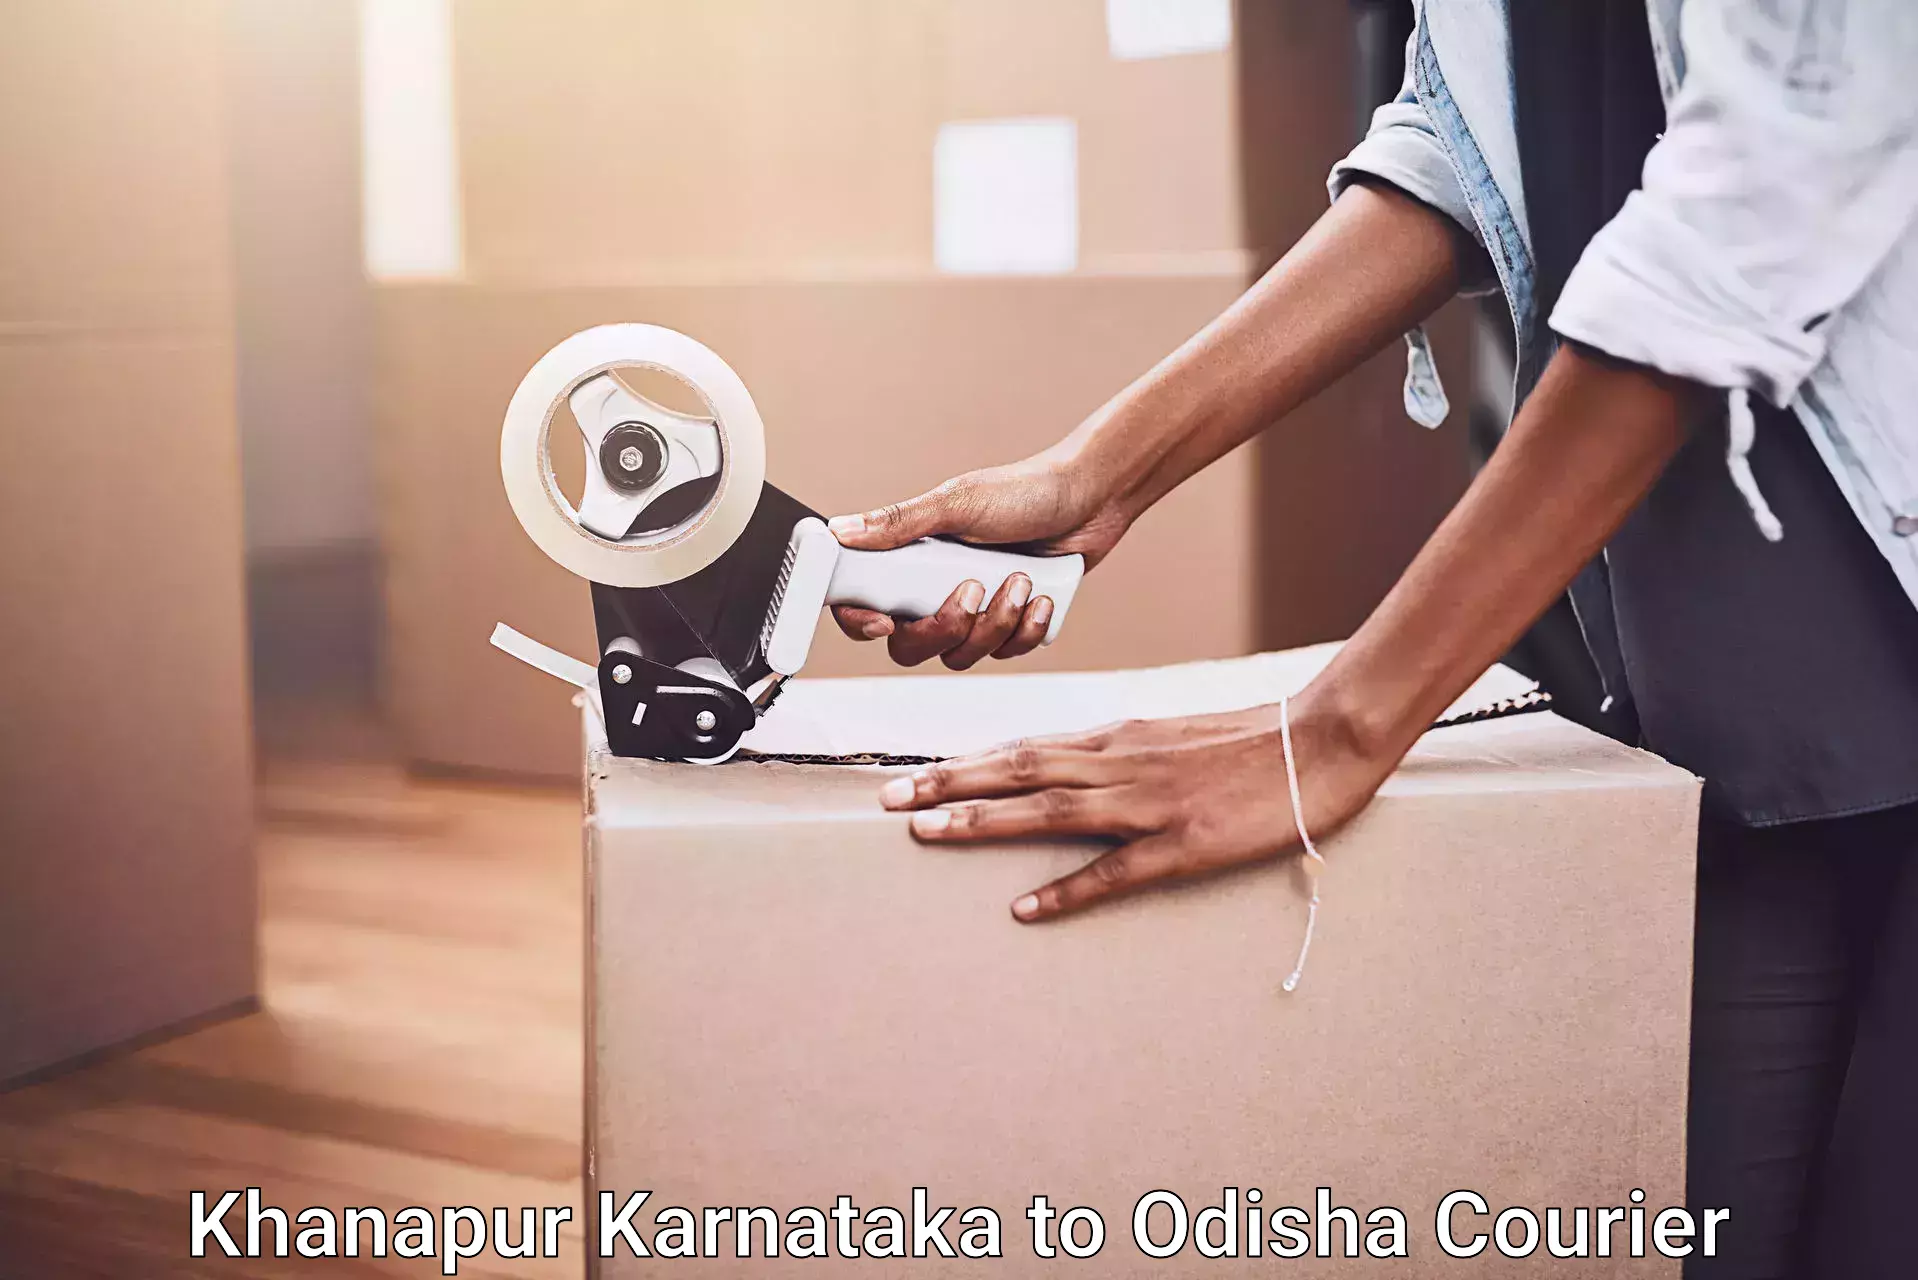 Furniture transport specialists Khanapur Karnataka to Saintala